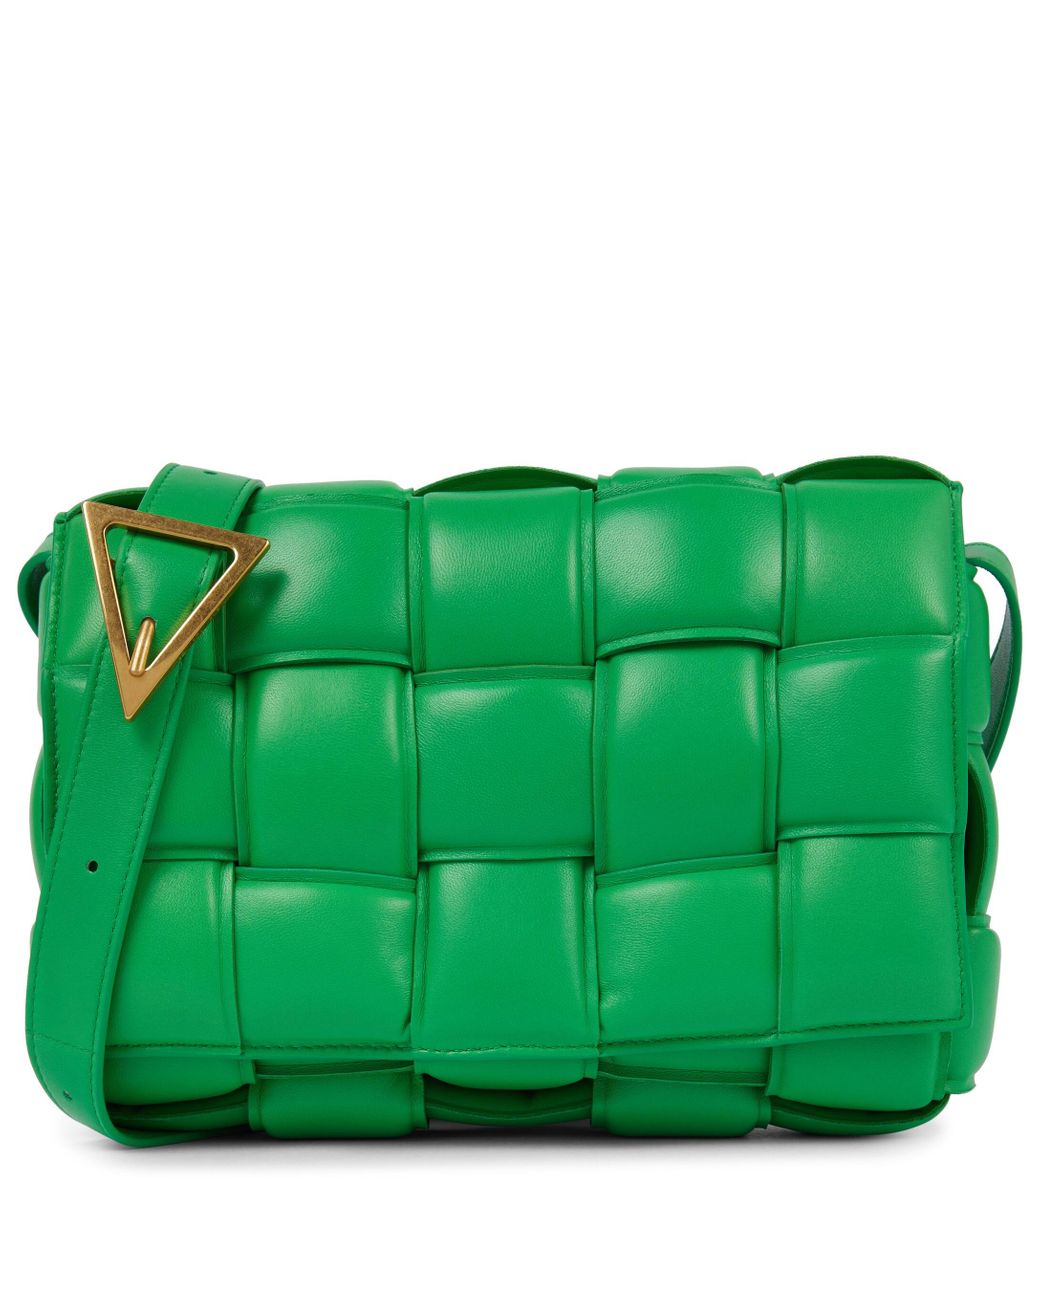 Bottega Veneta Padded Cassette Leather Shoulder Bag in Green | Lyst